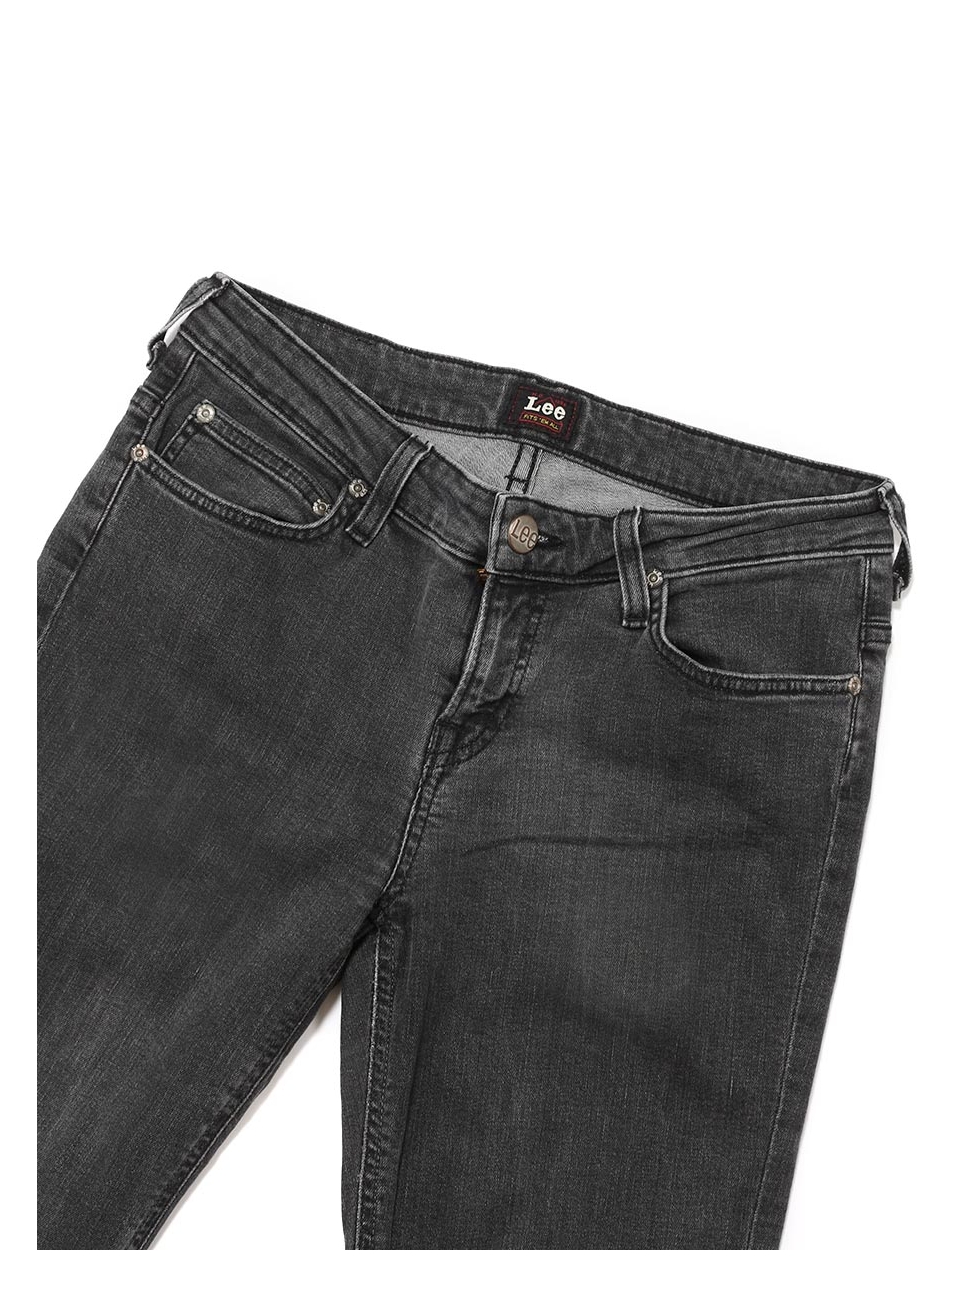 lee cooper scarlett jeans